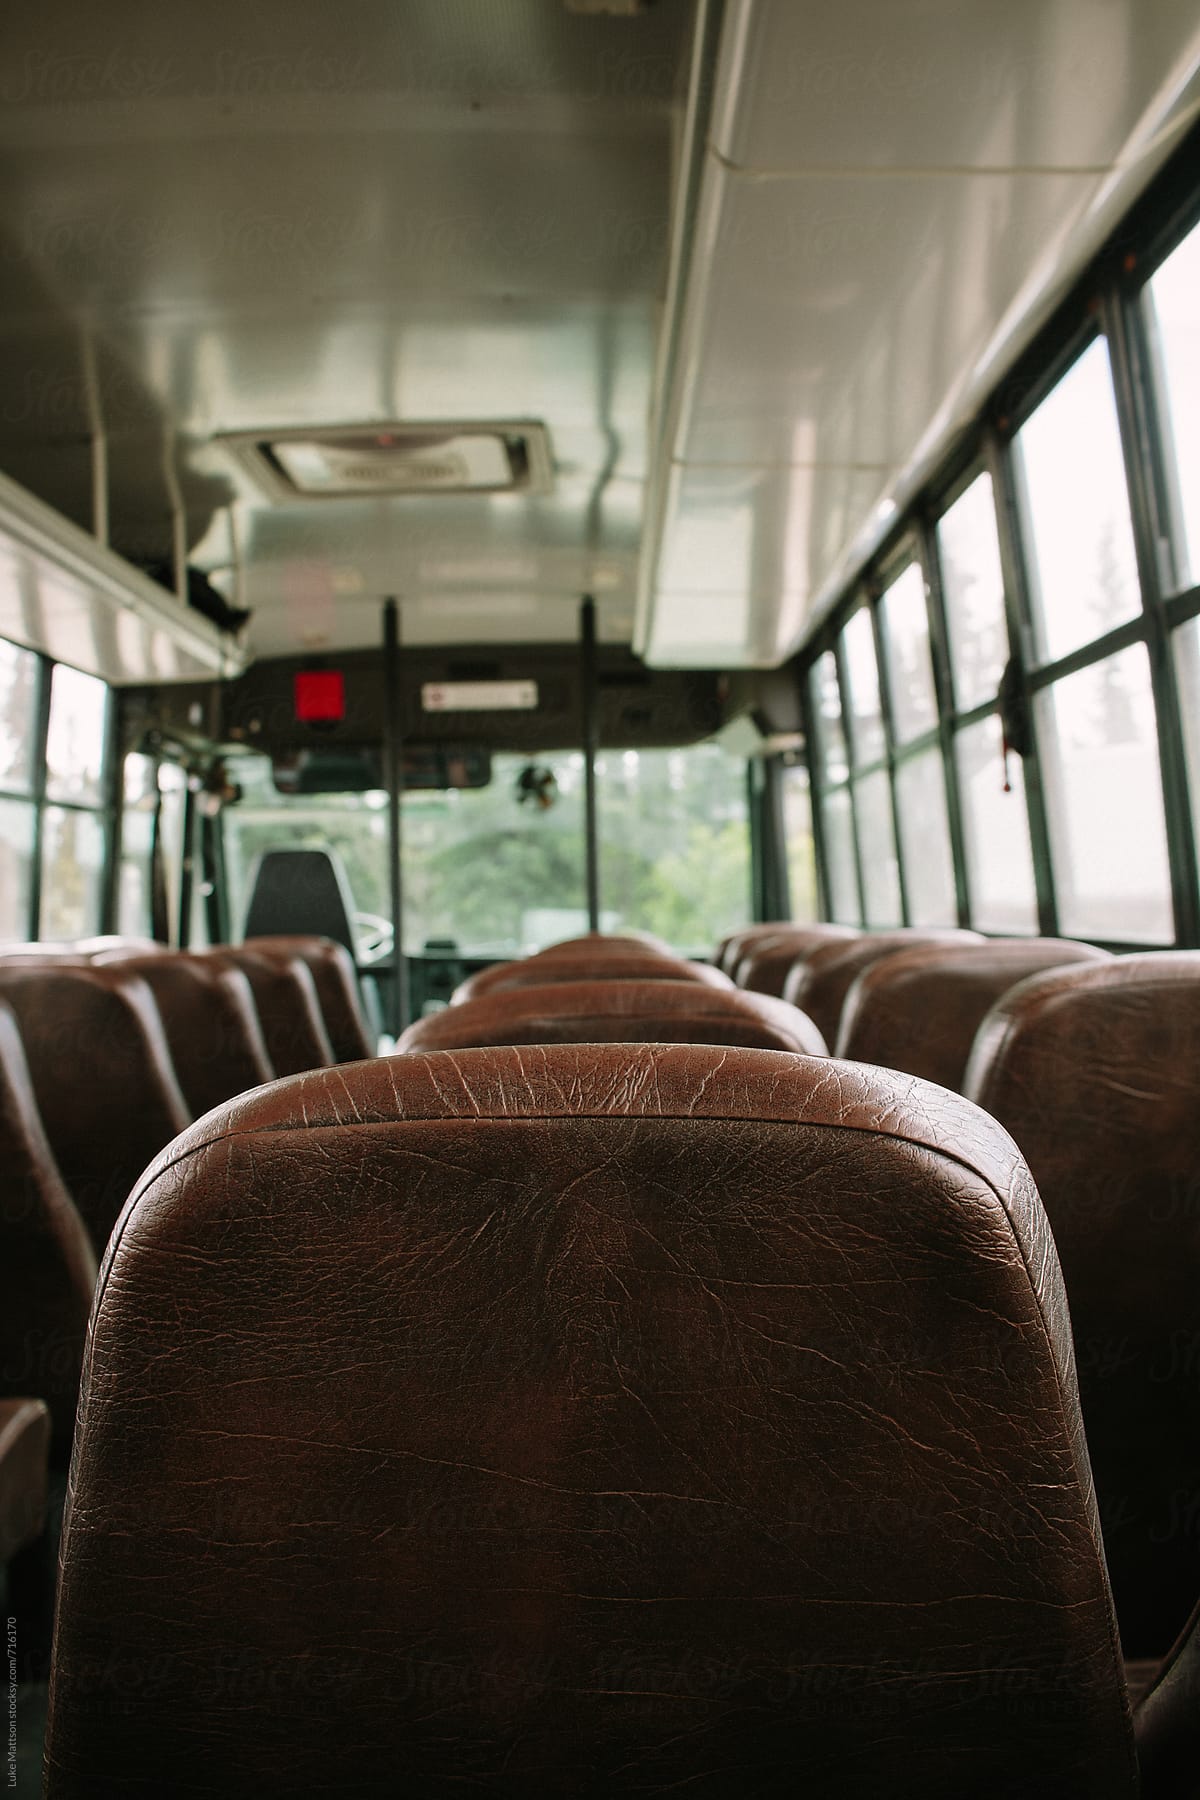 Empty Tour Bus